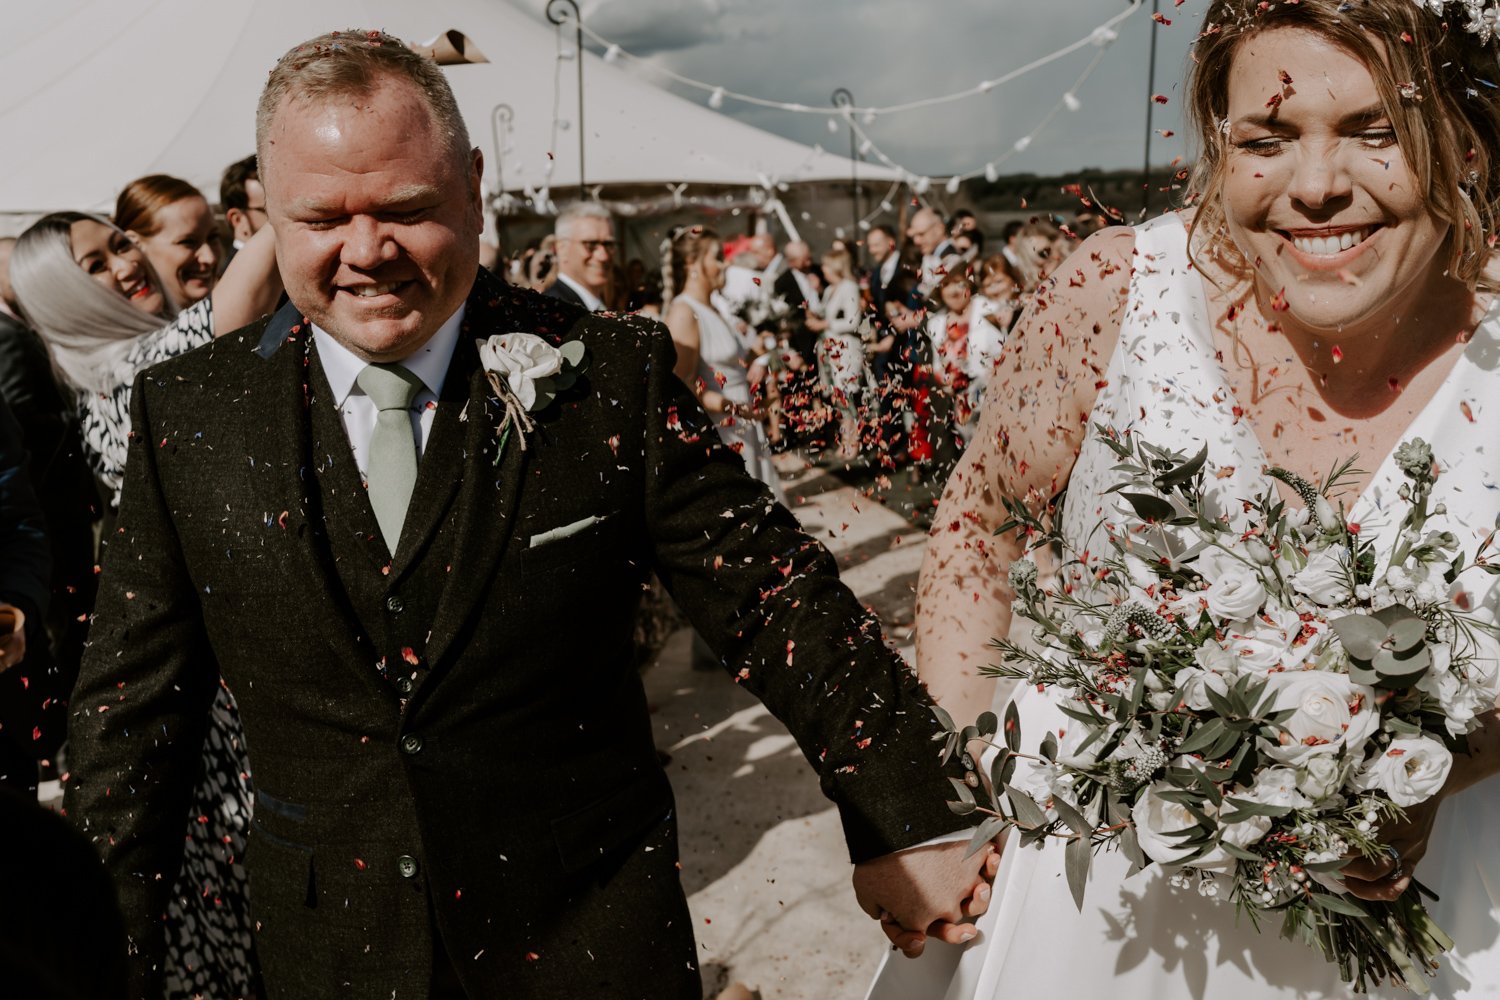 wedding confetti thrown bride groom Halfmoon Farm wedding Hambleton